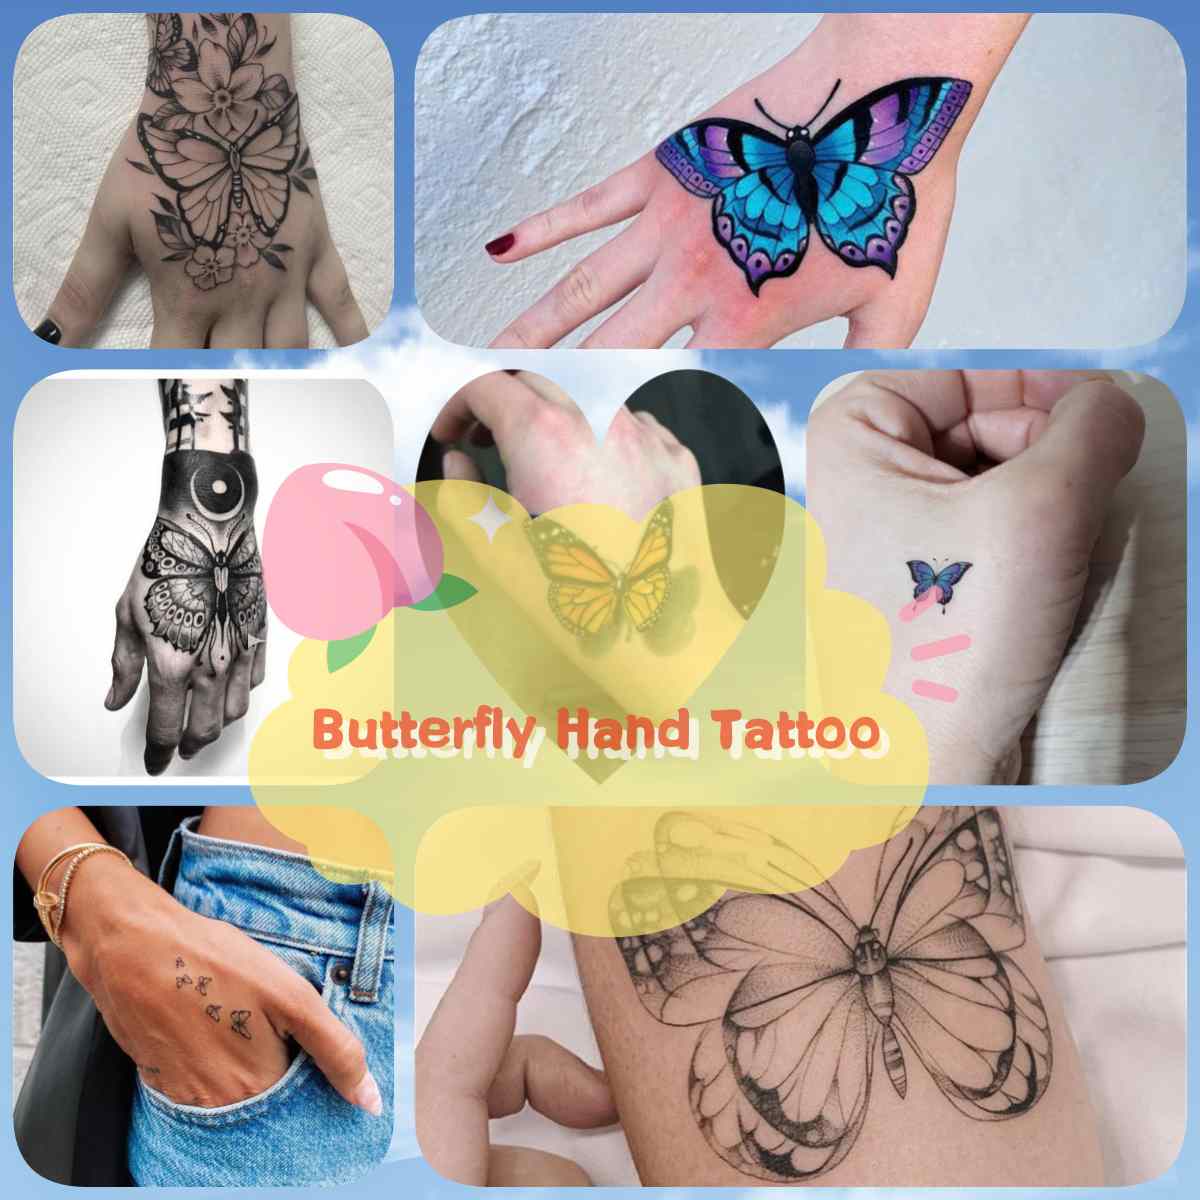 Tattoo Ideas on Twitter Butterfly Hand Tattoo httpstconB1UQqK2zu  httpstcoJERDxaqoDB  Twitter